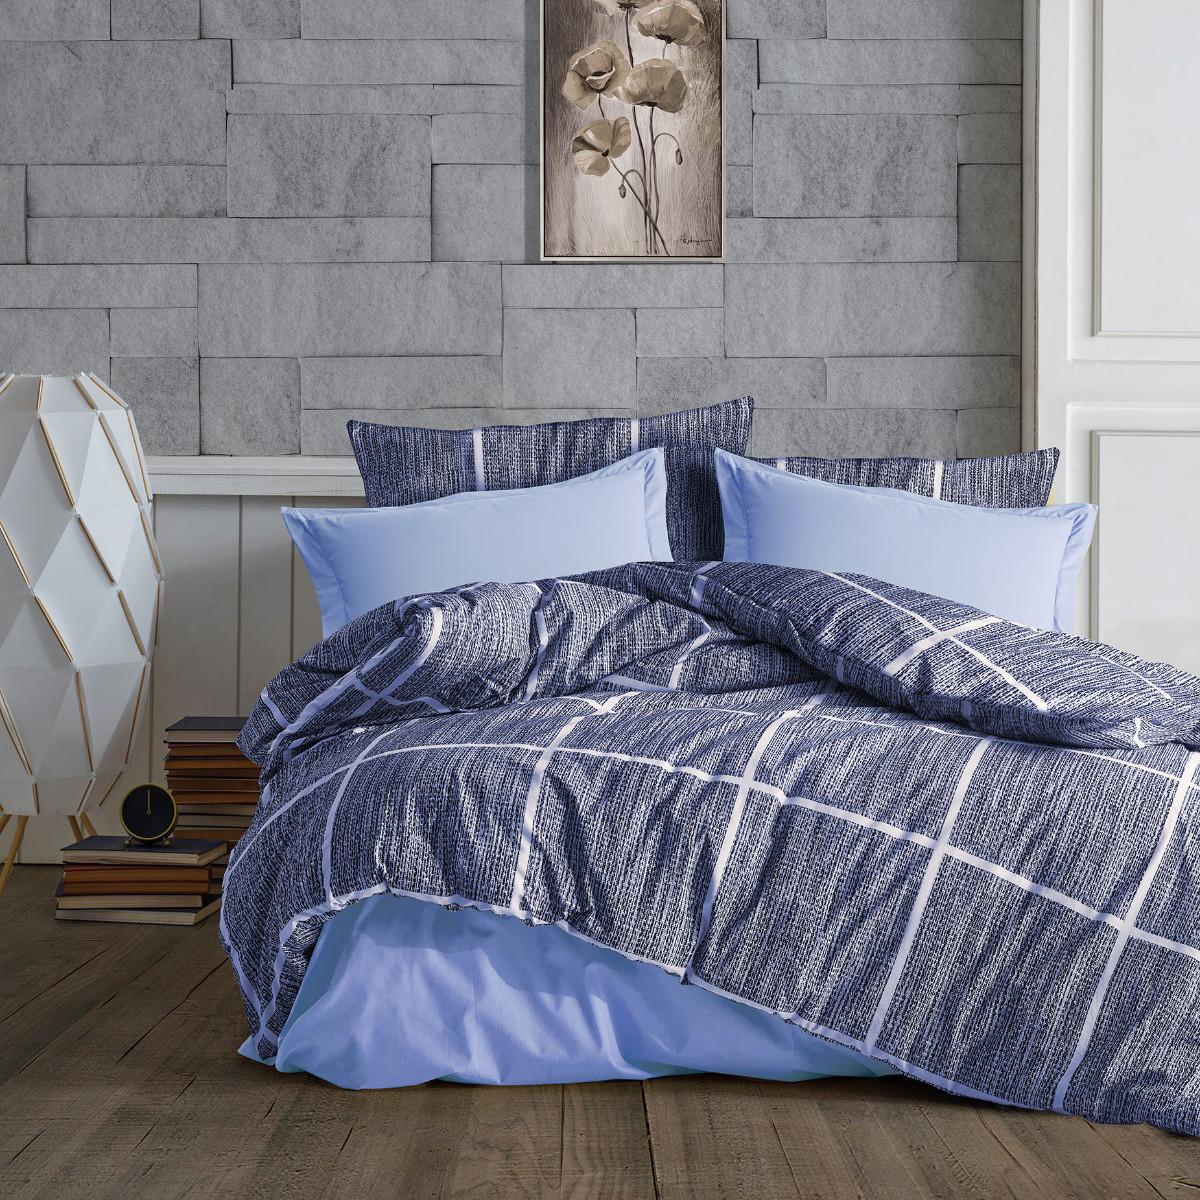 Selected image for Mille Notti Blue Square Pamučna posteljina za bračni ležaj, 200x220 cm, Plava